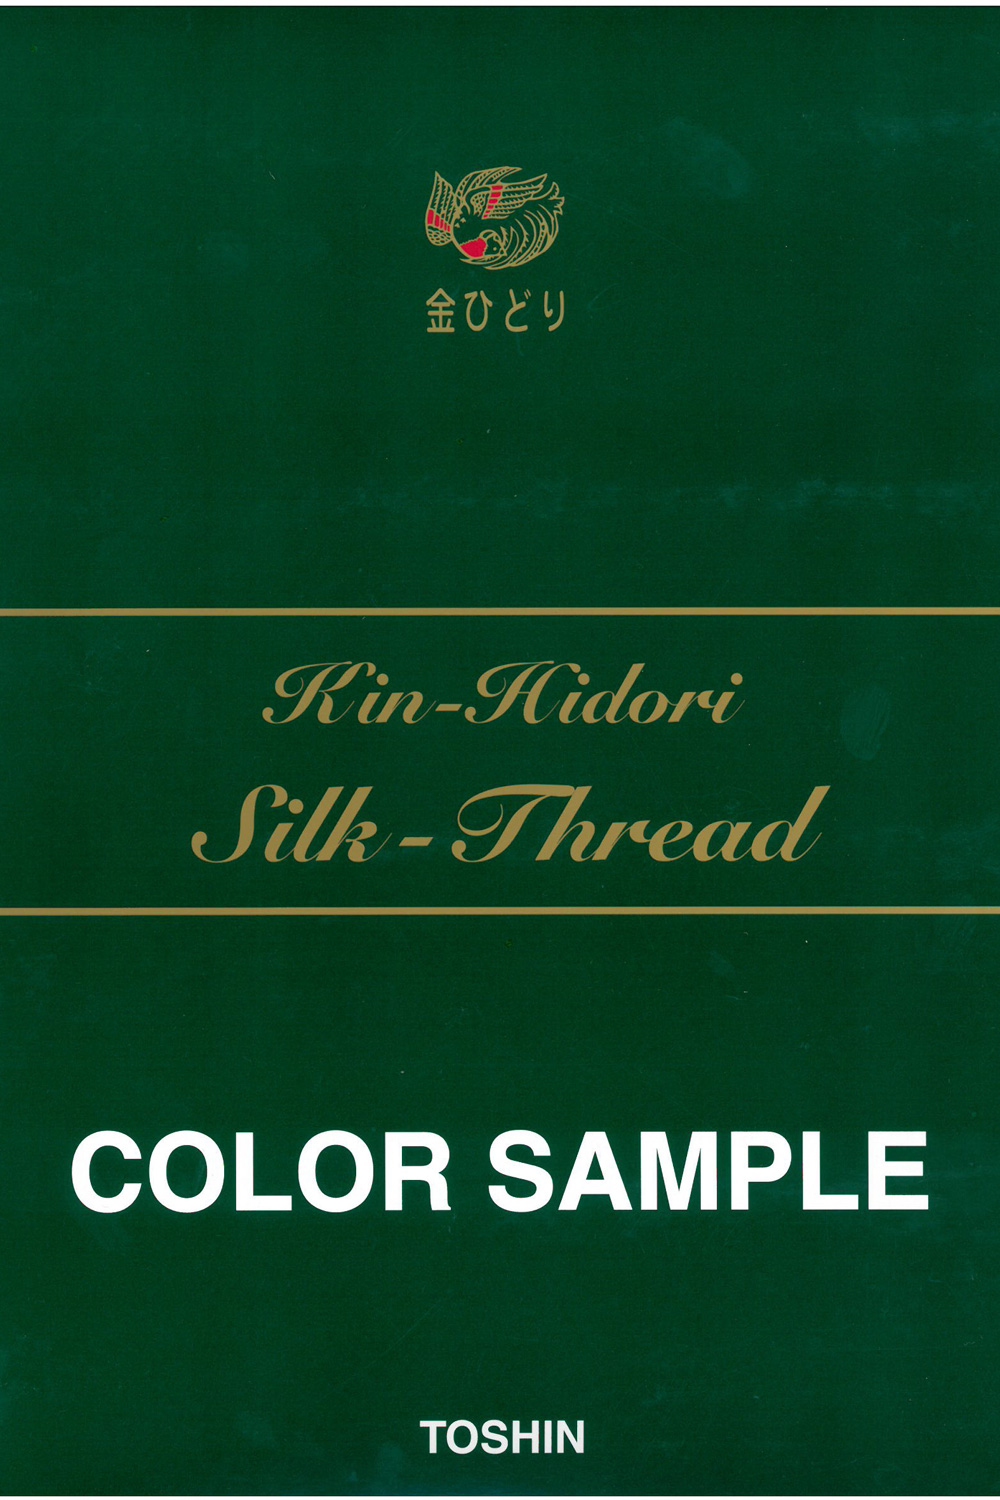 金ひどり 絹まつり(地縫) Kin-Hidori Silk Hand Sewing Thread TOSHIN